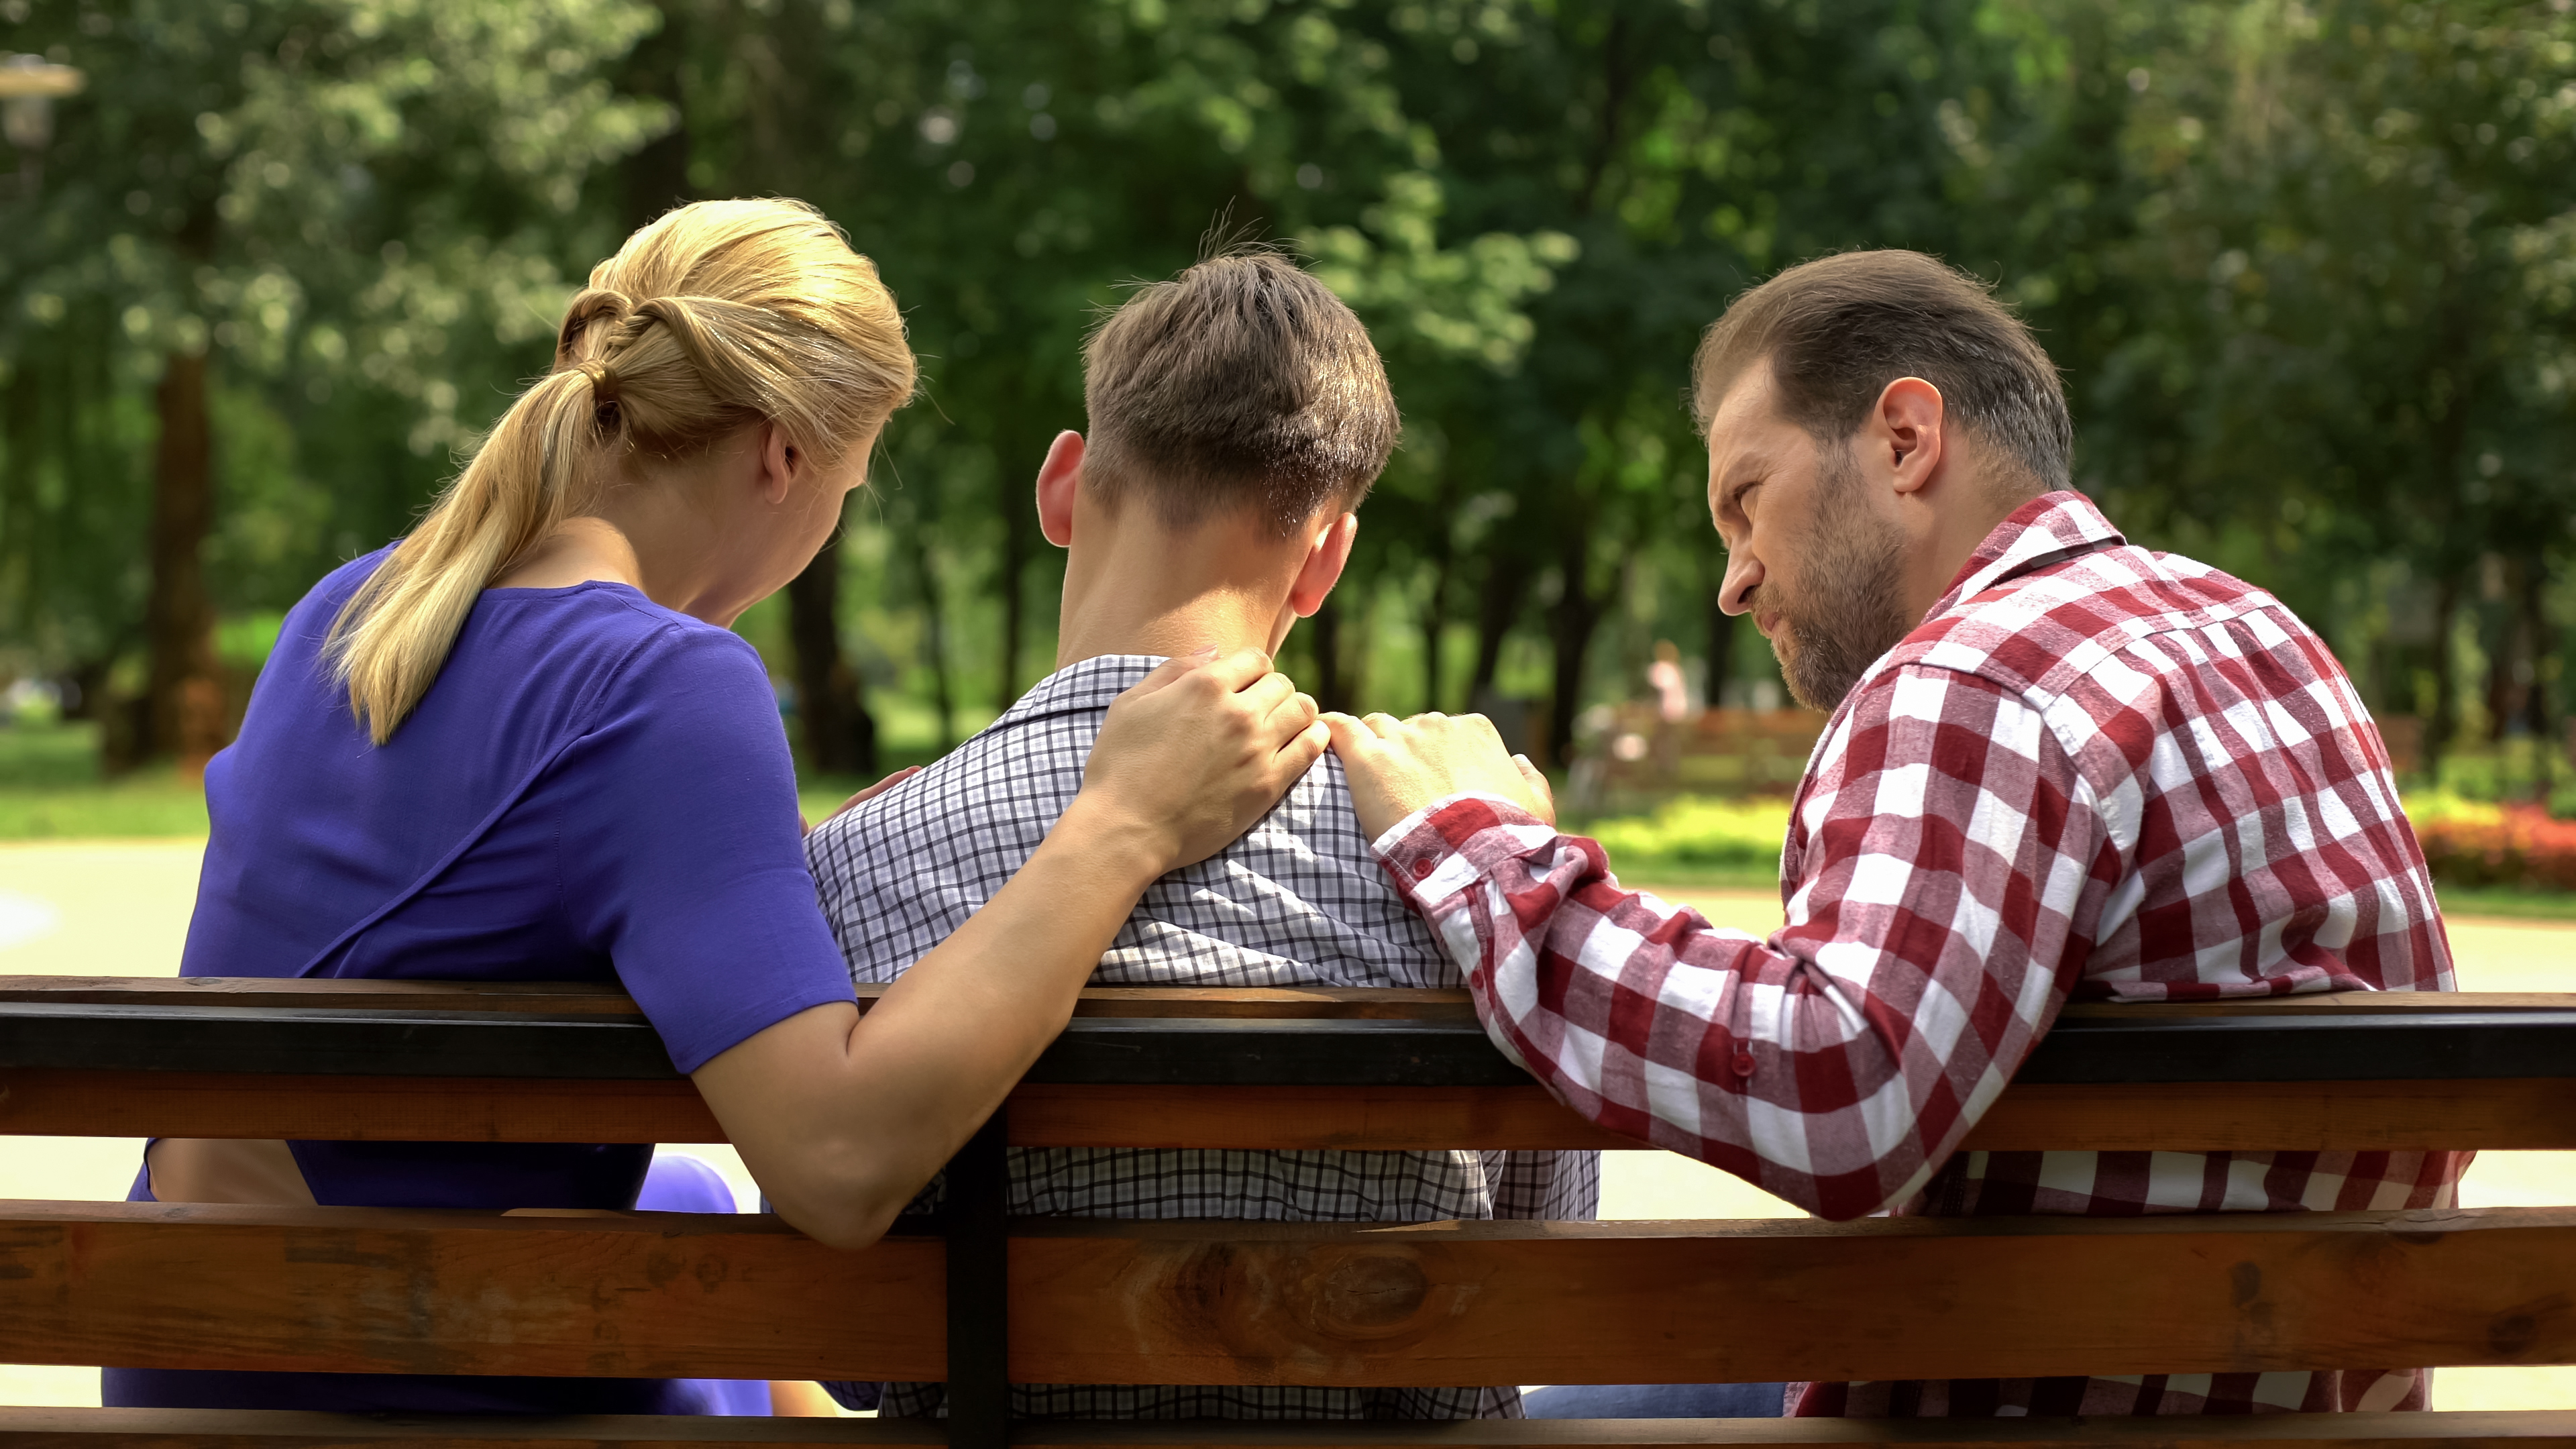 Eltern im Gespräch mit dem Sohn in einem Park | Quelle: Shutterstock